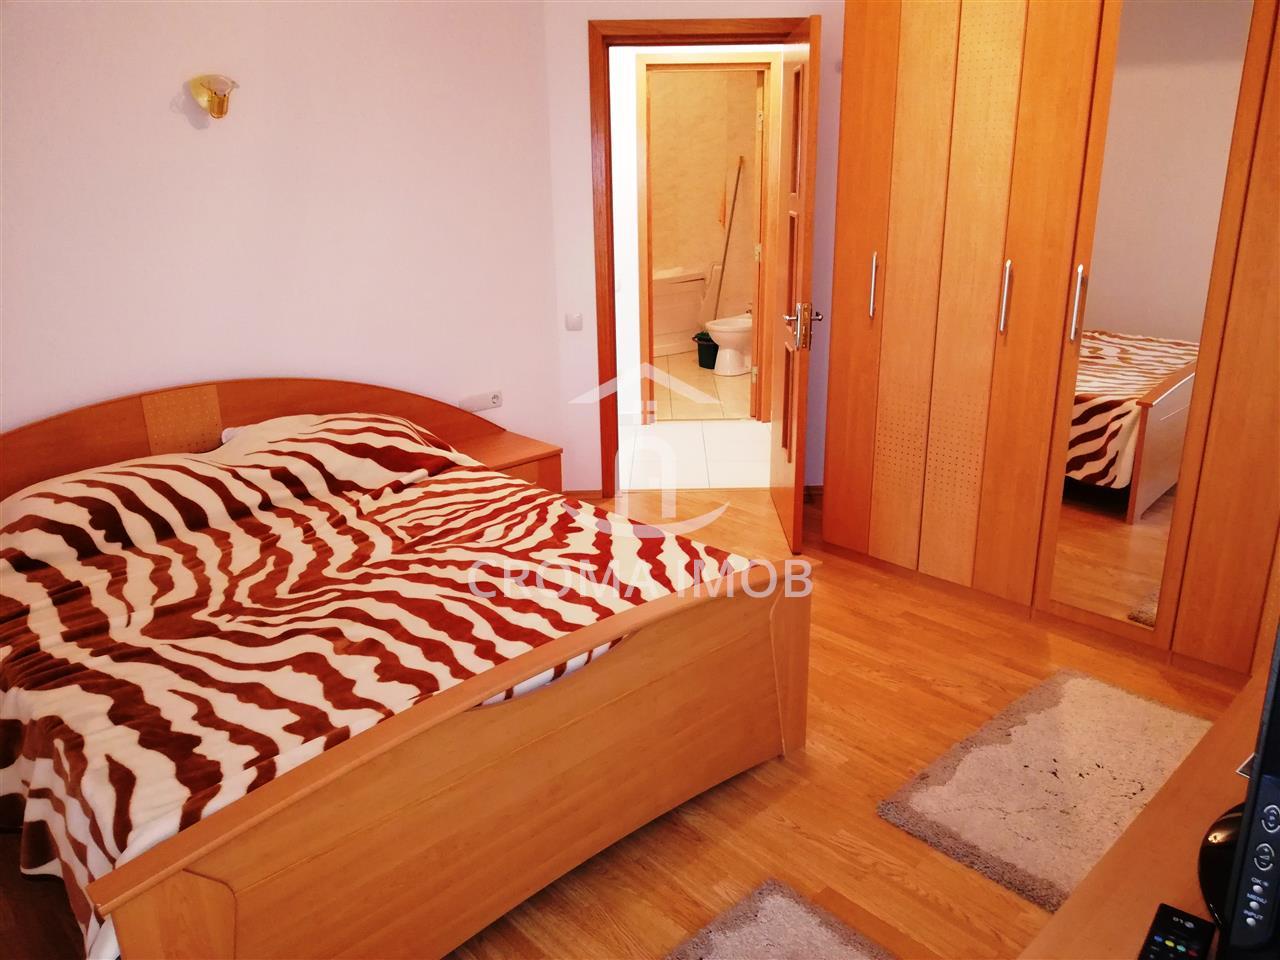 Inchiriere apartament de Lux, 3 camere in Ploiesti, zona Cantacuzino